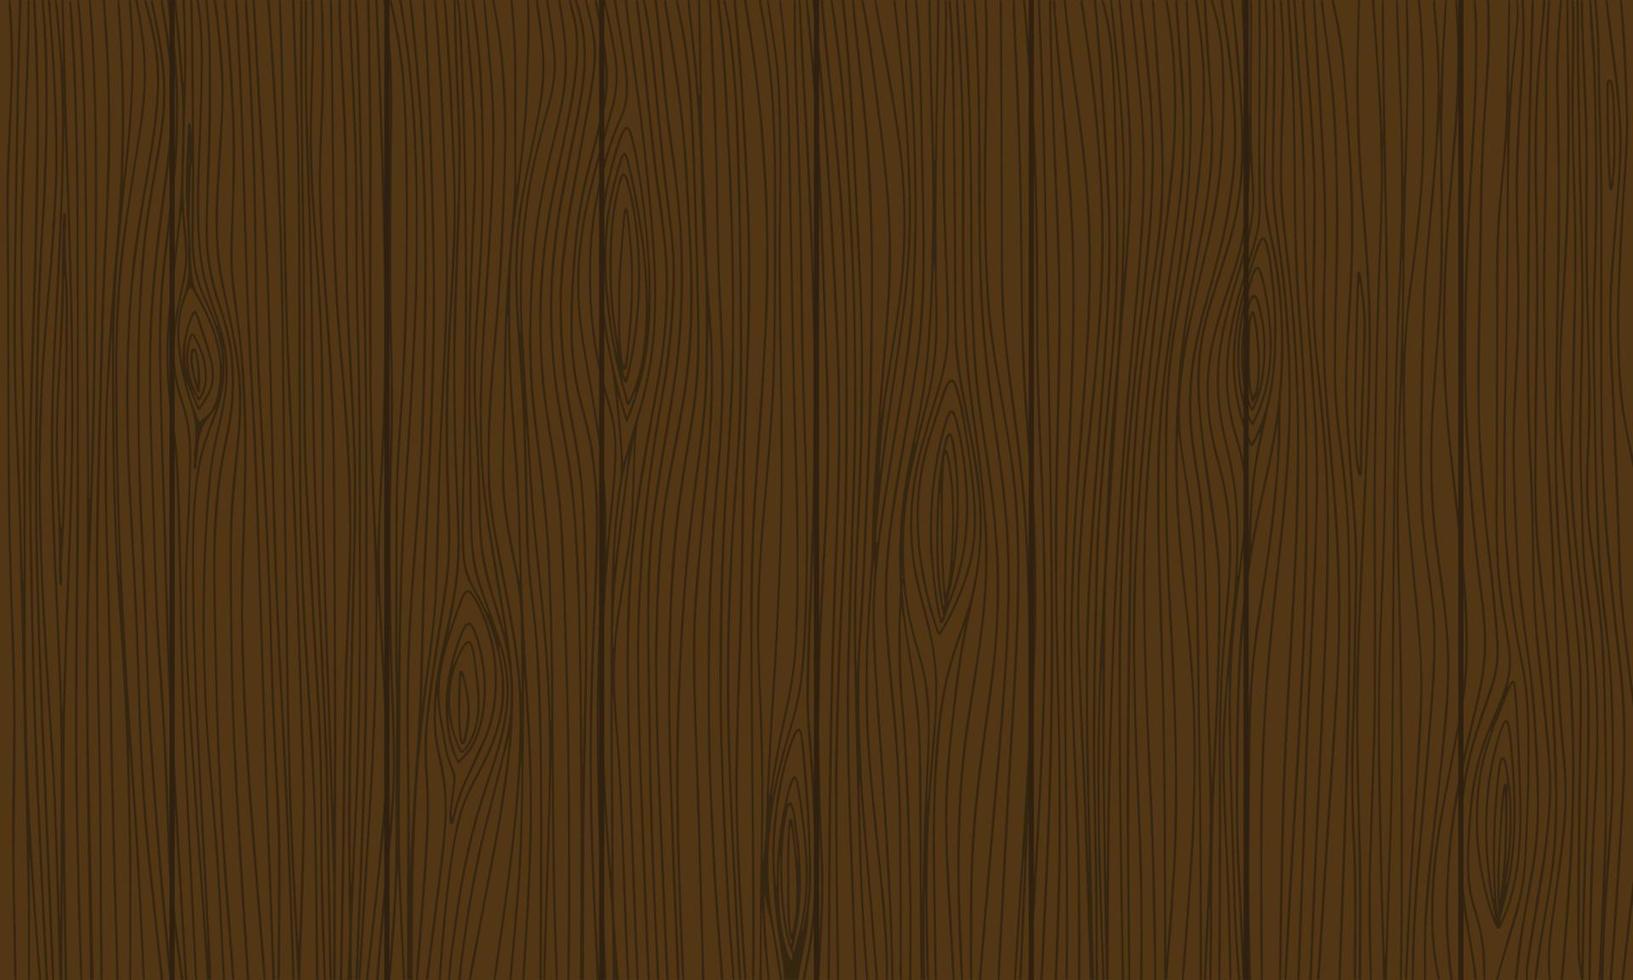 donker houten achtergrond met planken. vector illustratie.